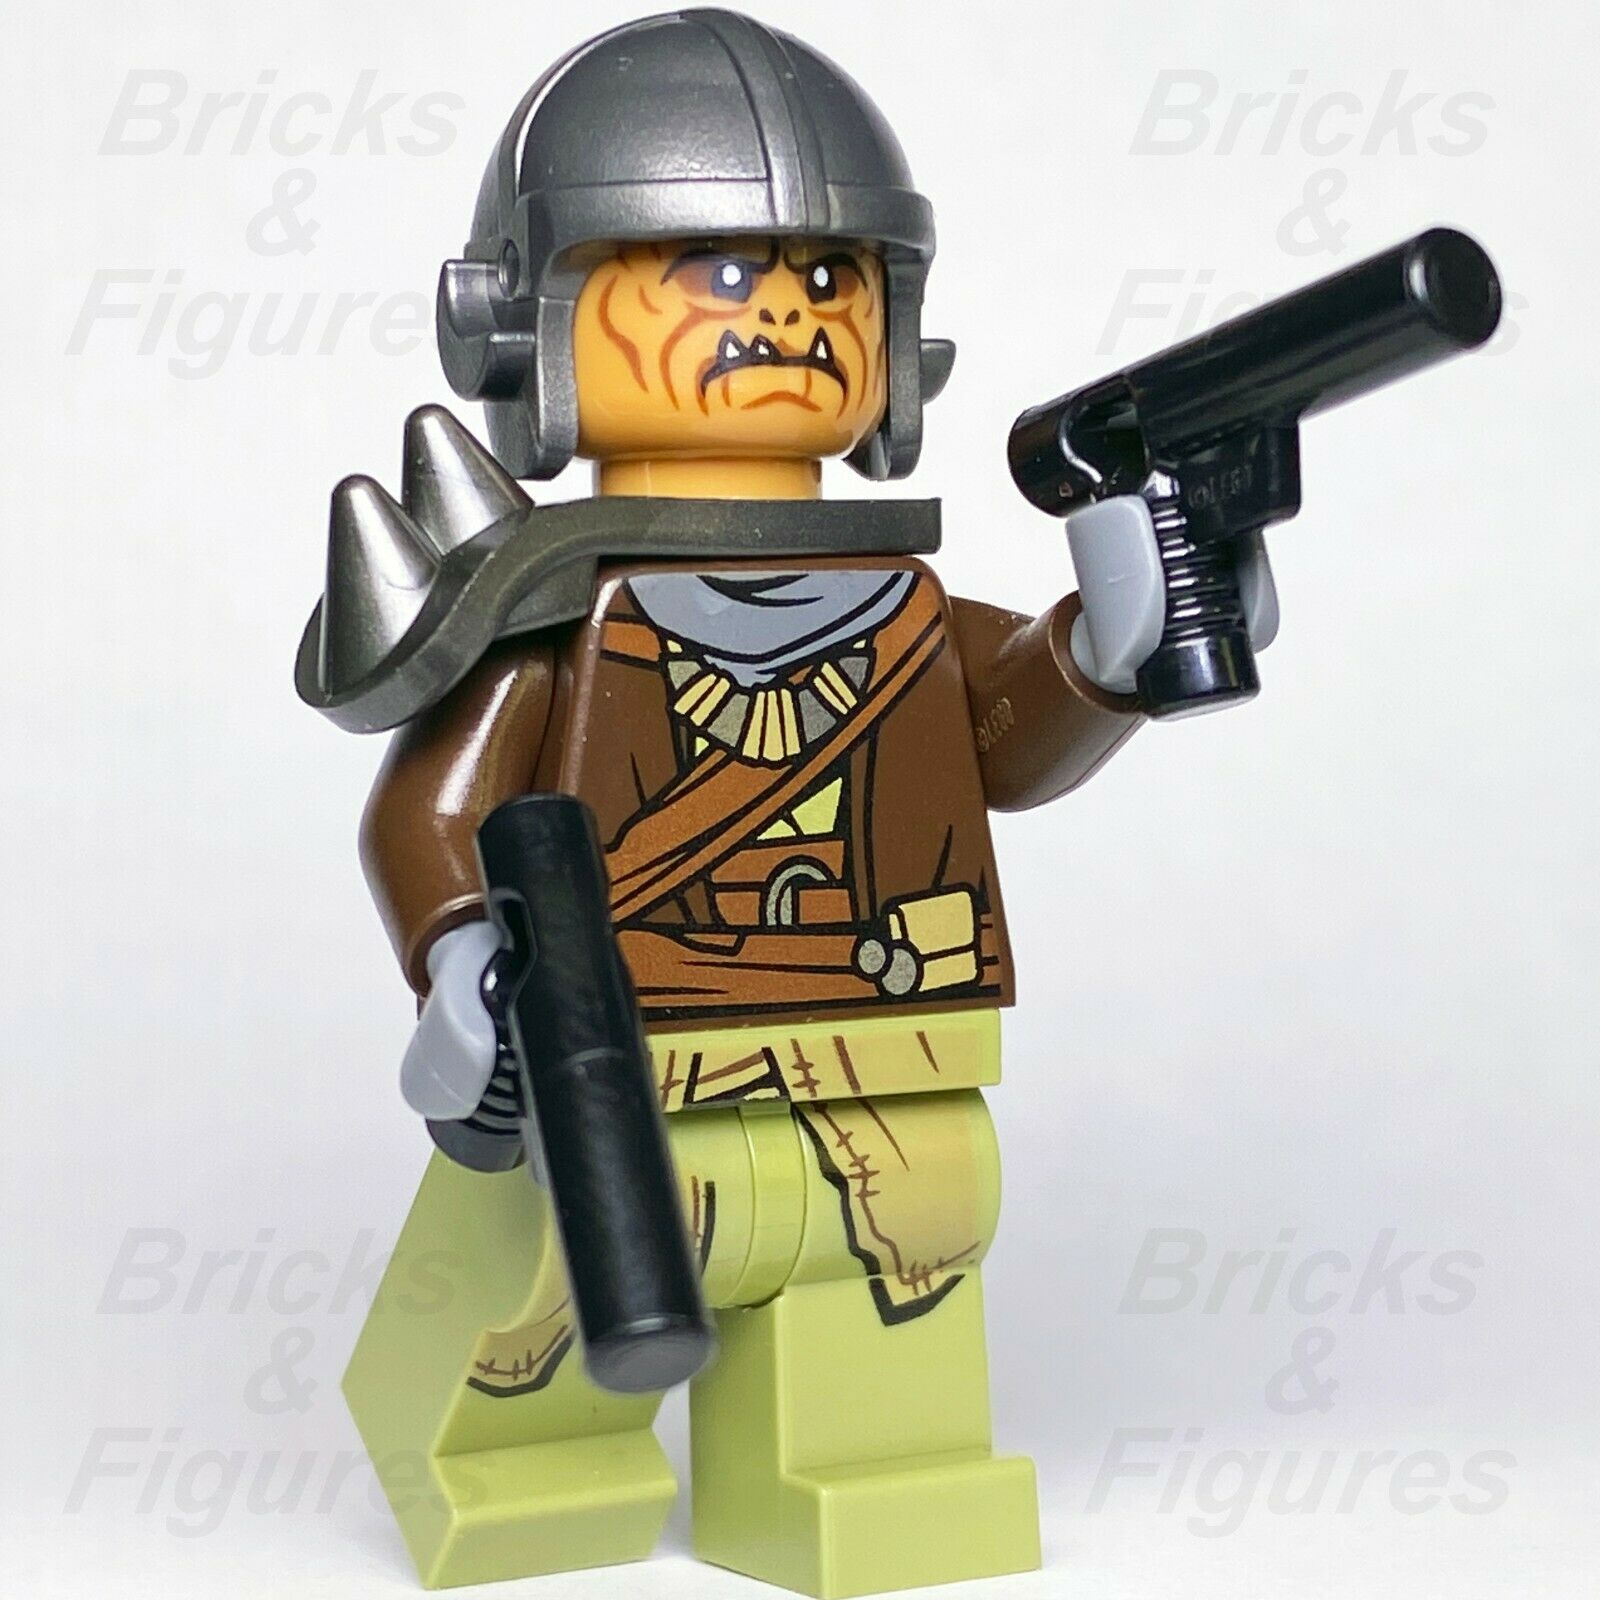 Star Wars LEGO Klatooinian Raider with Helmet The Mandalorian Minifigure 75254 - Bricks & Figures